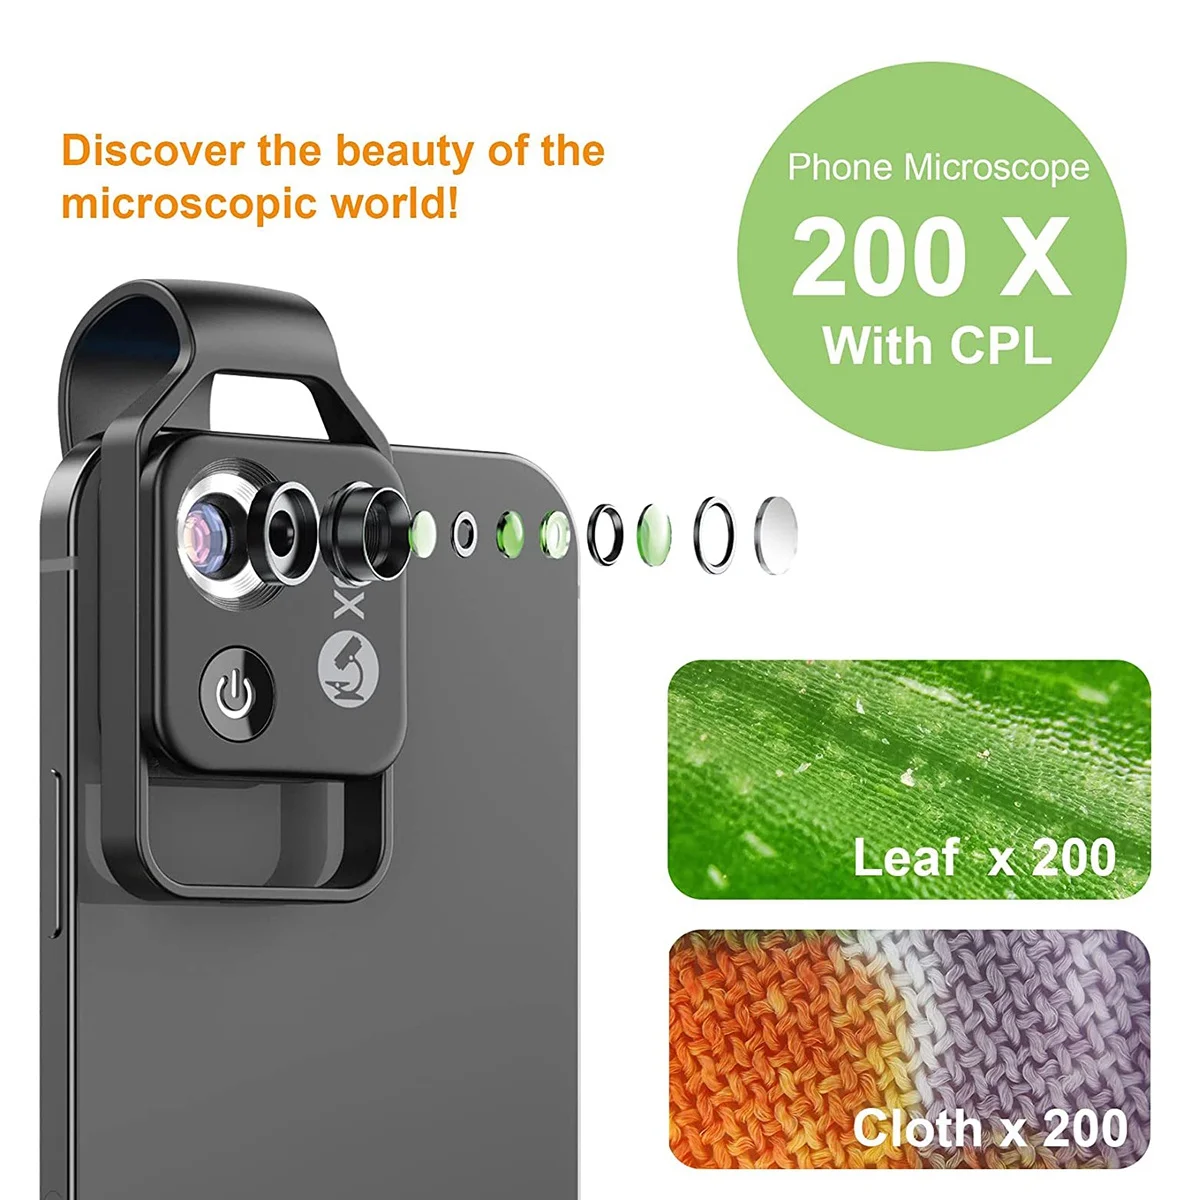 200 X Telefón Mikroskop s CPL Objektív,Vrecko Smartphone Digitálny Mikroskop pre Telefón, Zväčšovacie Mikroskop s LED Svetlom1